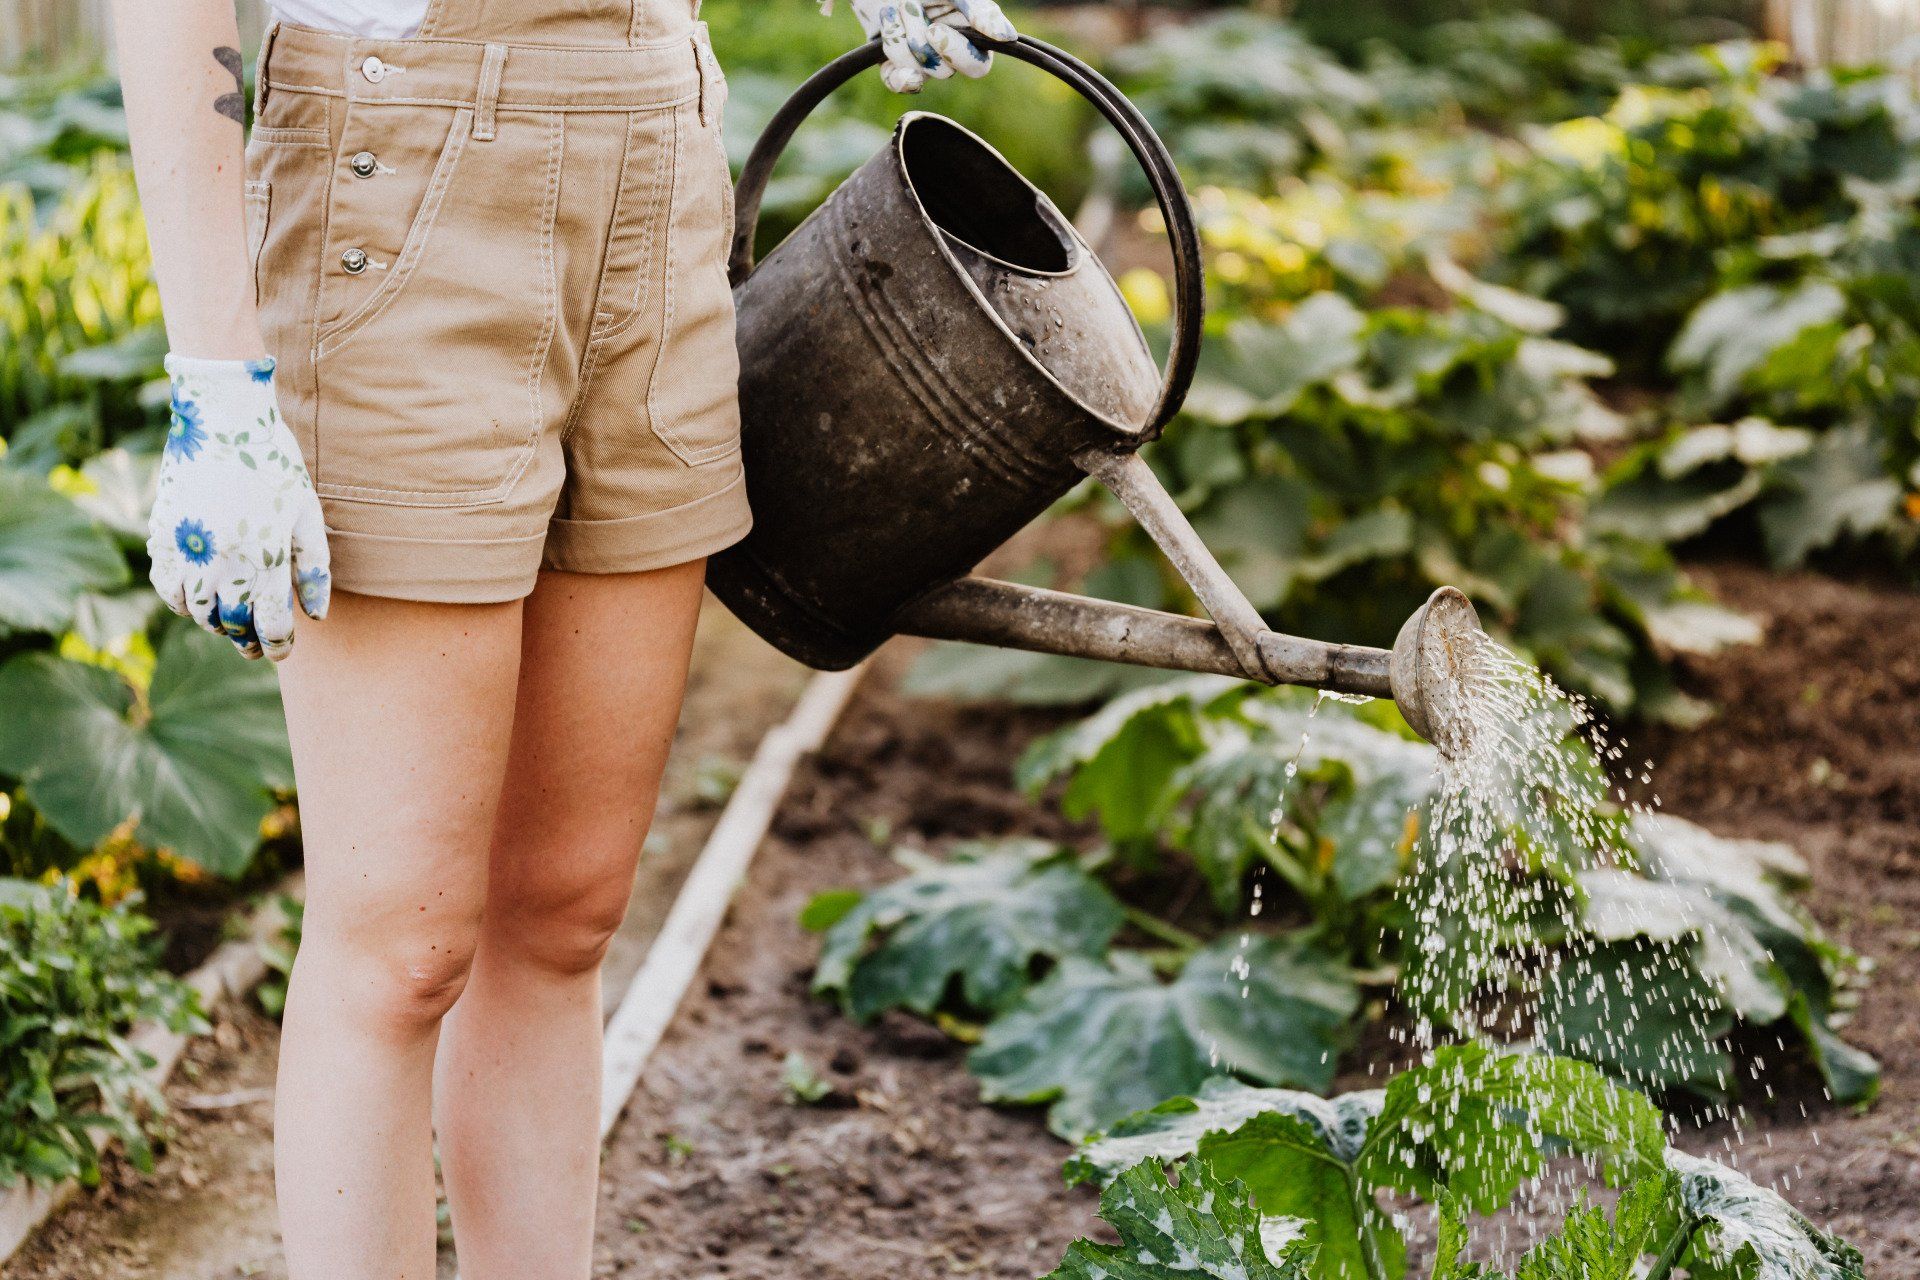 une femme tient un arrosoir et arrose des plantes dans un jardin